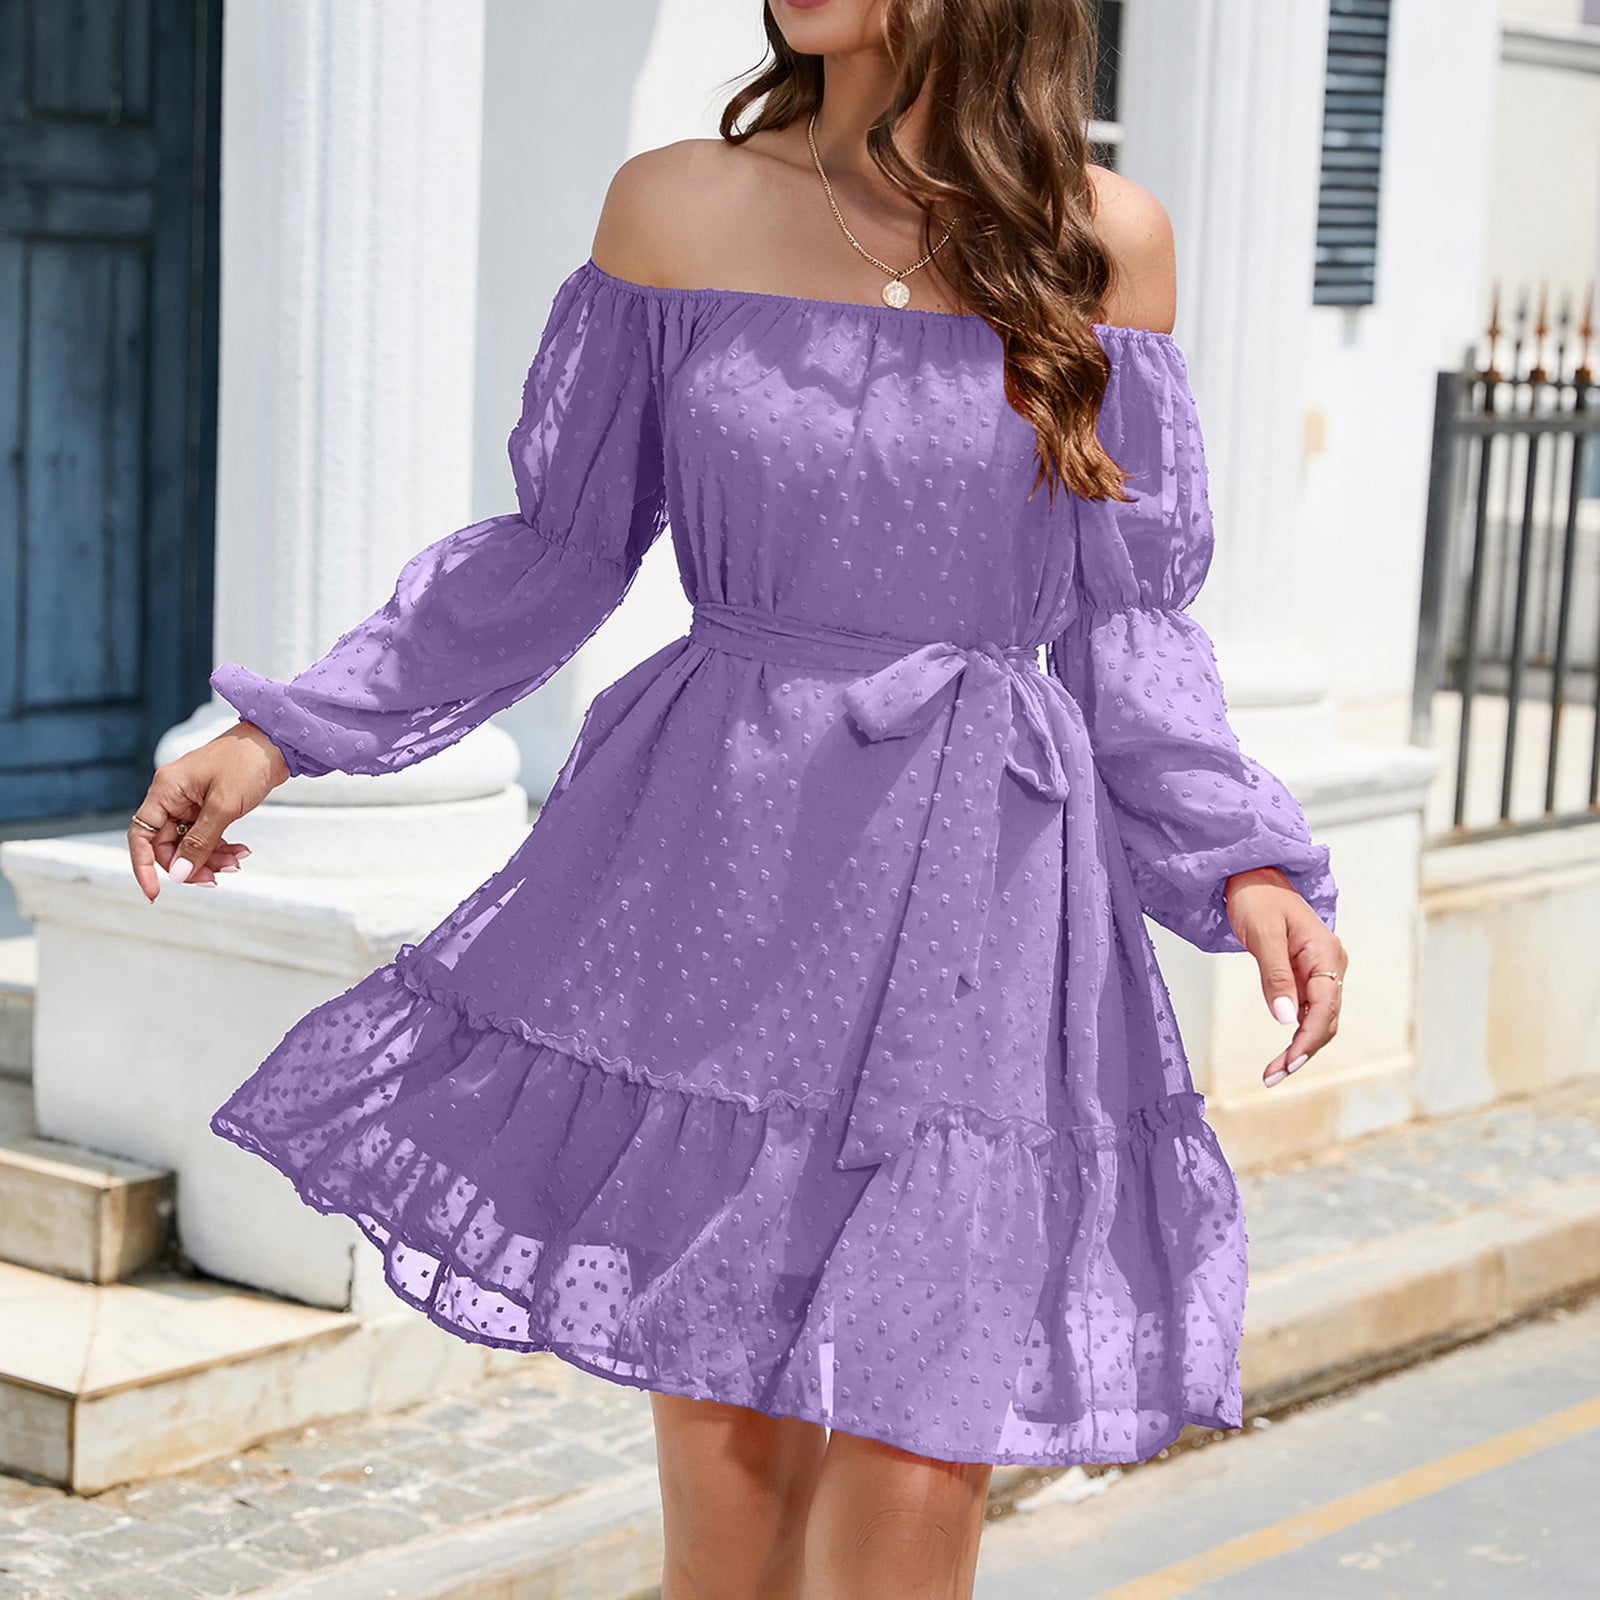 women purple dress